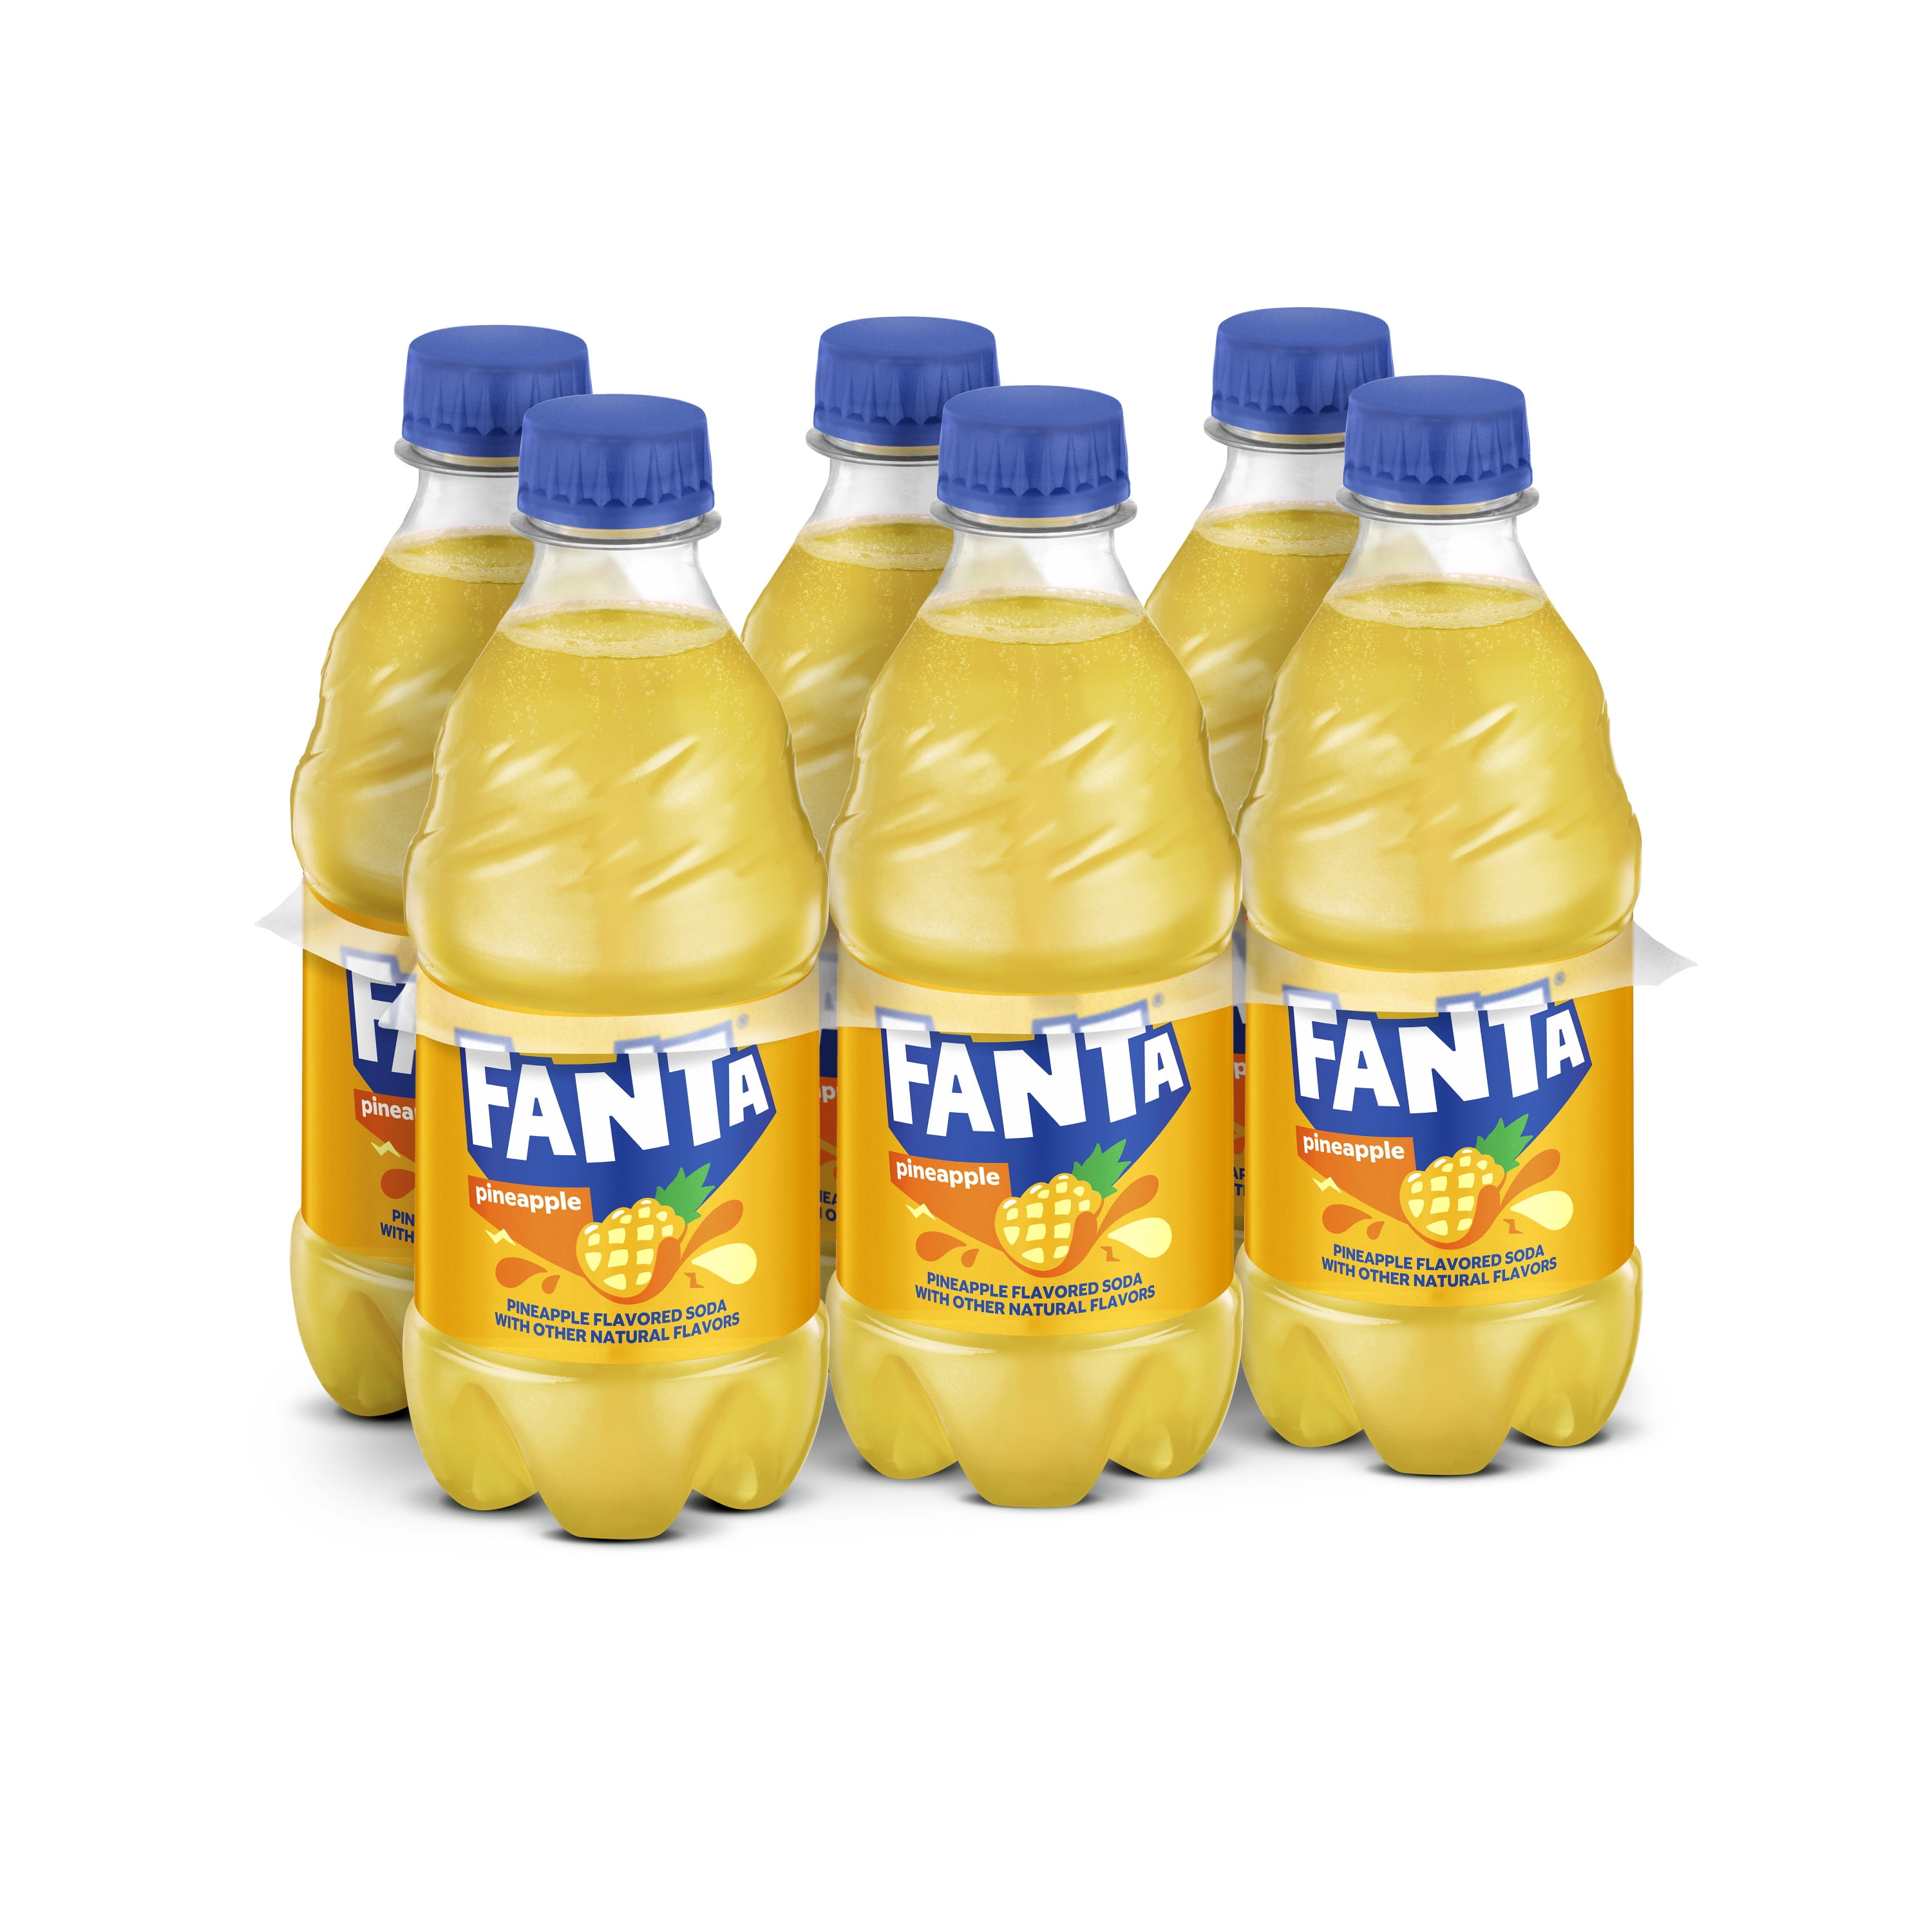 Fanta Pineapple Soda Bottles, 12 fl oz, 6 Pack - Walmart.com